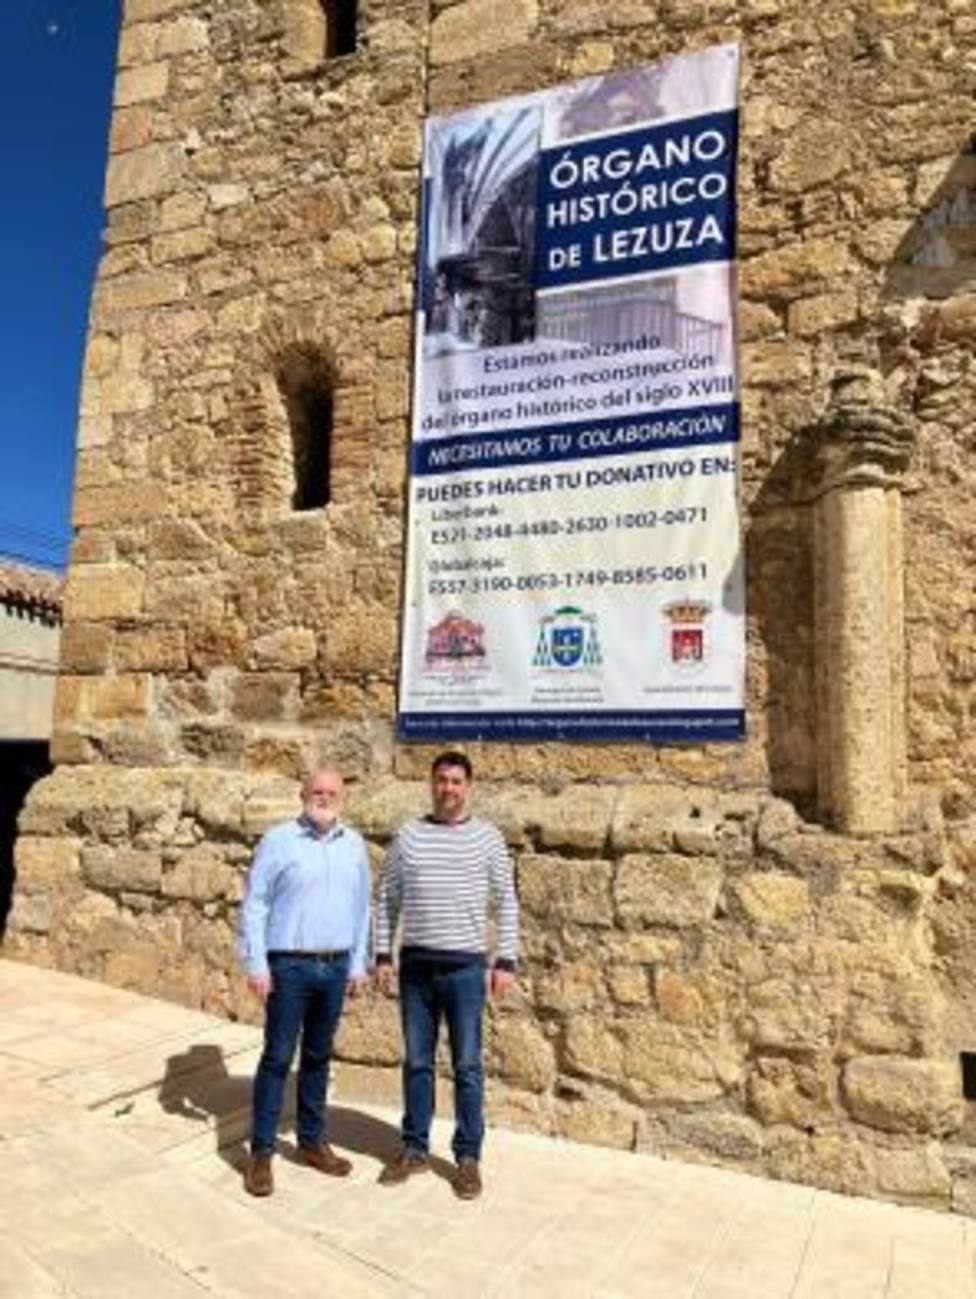 El Gobierno regional destaca la restauración del Órgano Histórico de Lezuza como un “ejemplo” de colaboración en la recuperación del patrimonio en la provincia de Albacete